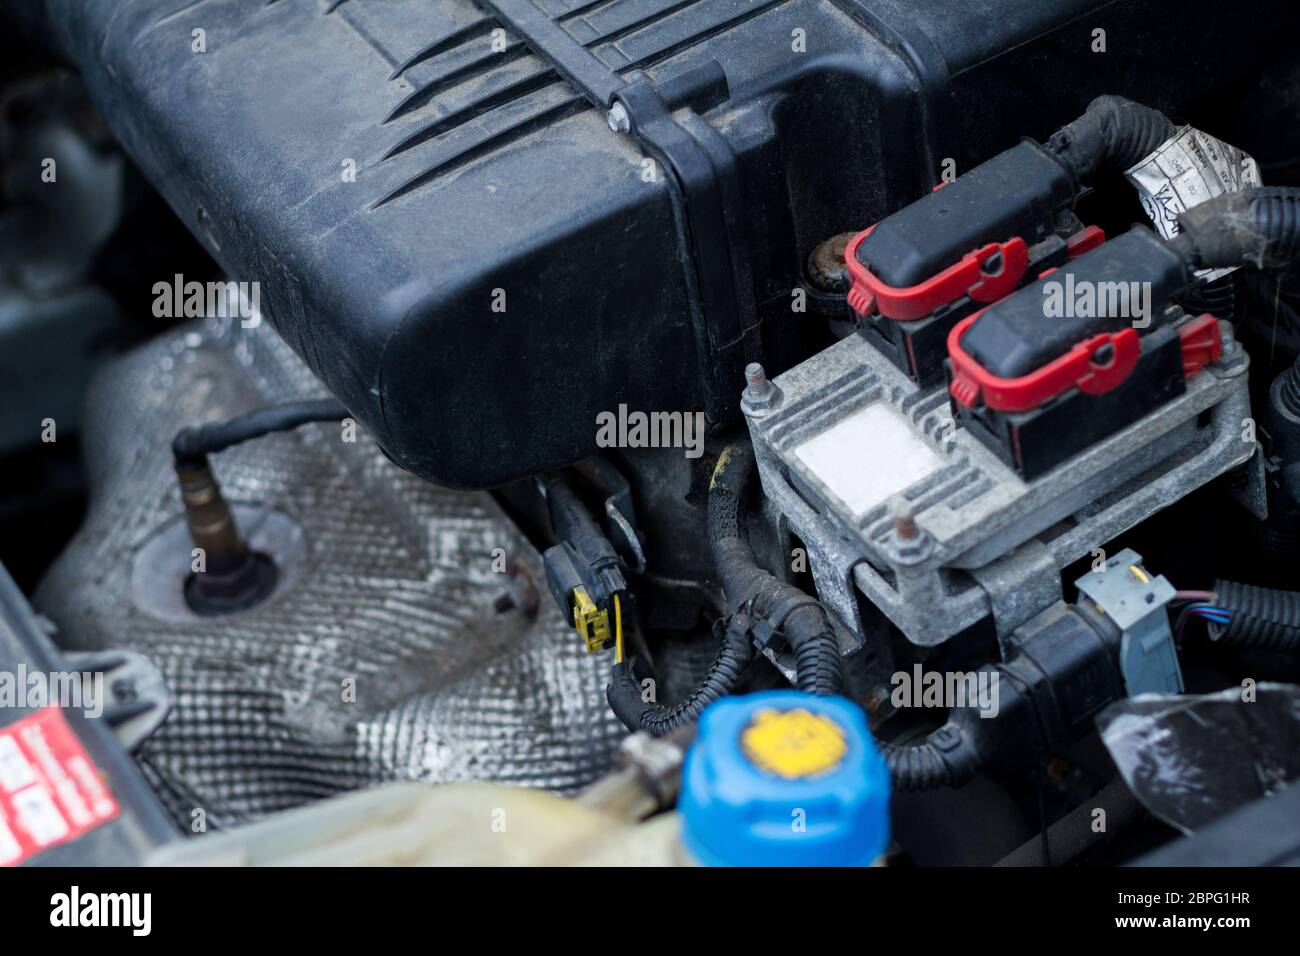 Vue du compartiment moteur d'une petite voiture avec accumulation de poussière et de saleté sur la technologie moteur diagnostic expert diagnostic alternateur tec Banque D'Images